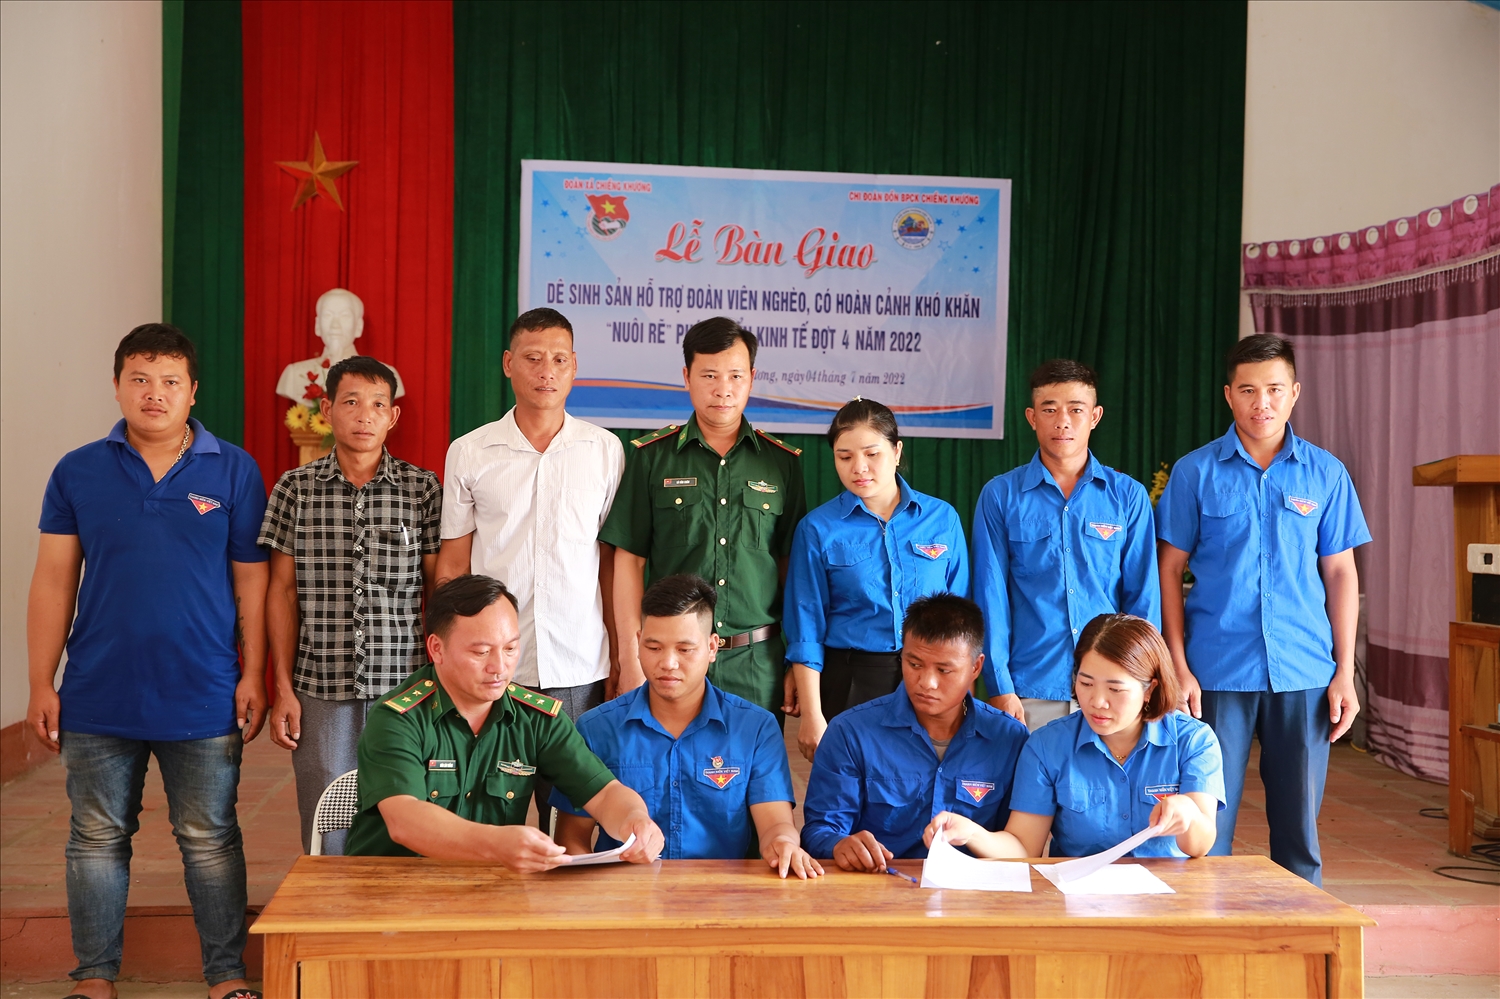 Lễ bàn giao hỗ trợ dê sinh sản đợt 4 cho các hộ đoàn viên nghèo trên địa bàn xã biên giới Chiềng Khương, huyện Sông Mã, tỉnh Sơn La